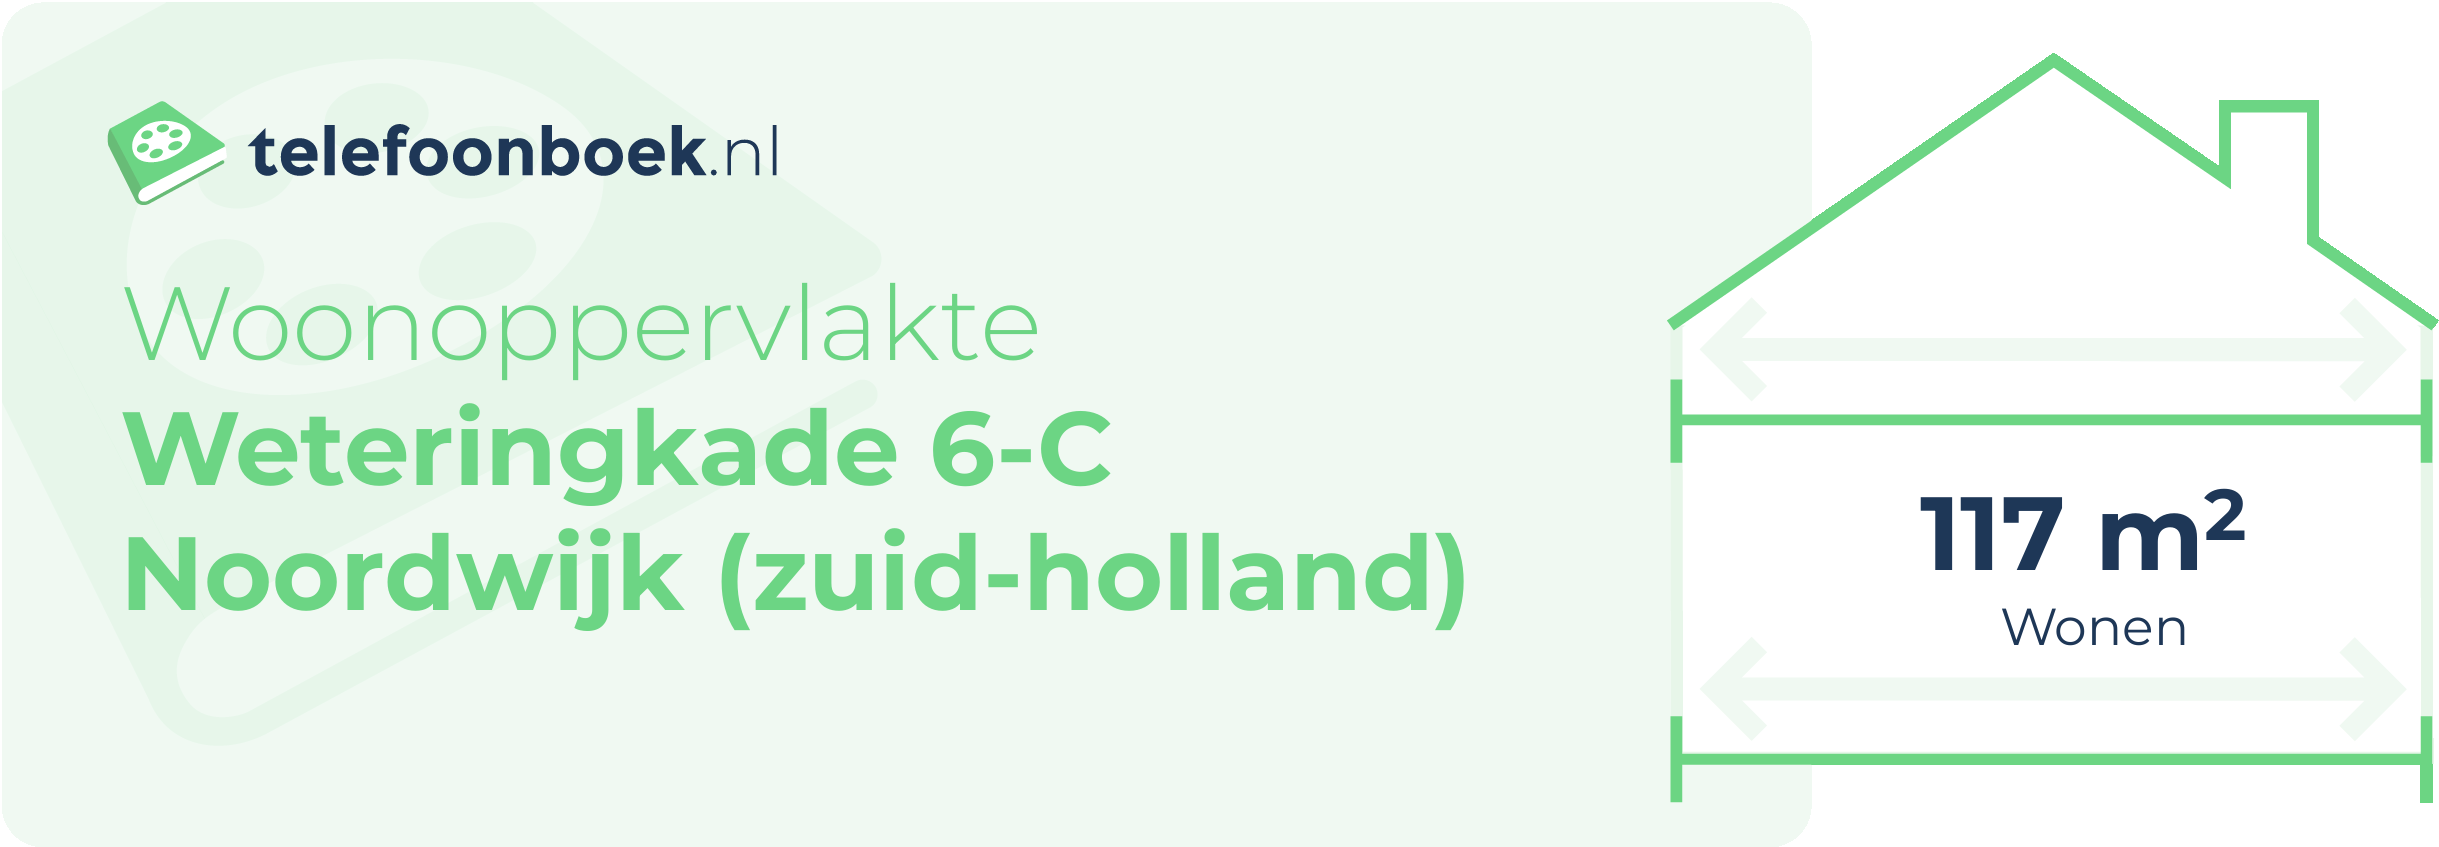 Woonoppervlakte Weteringkade 6-C Noordwijk (Zuid-Holland)